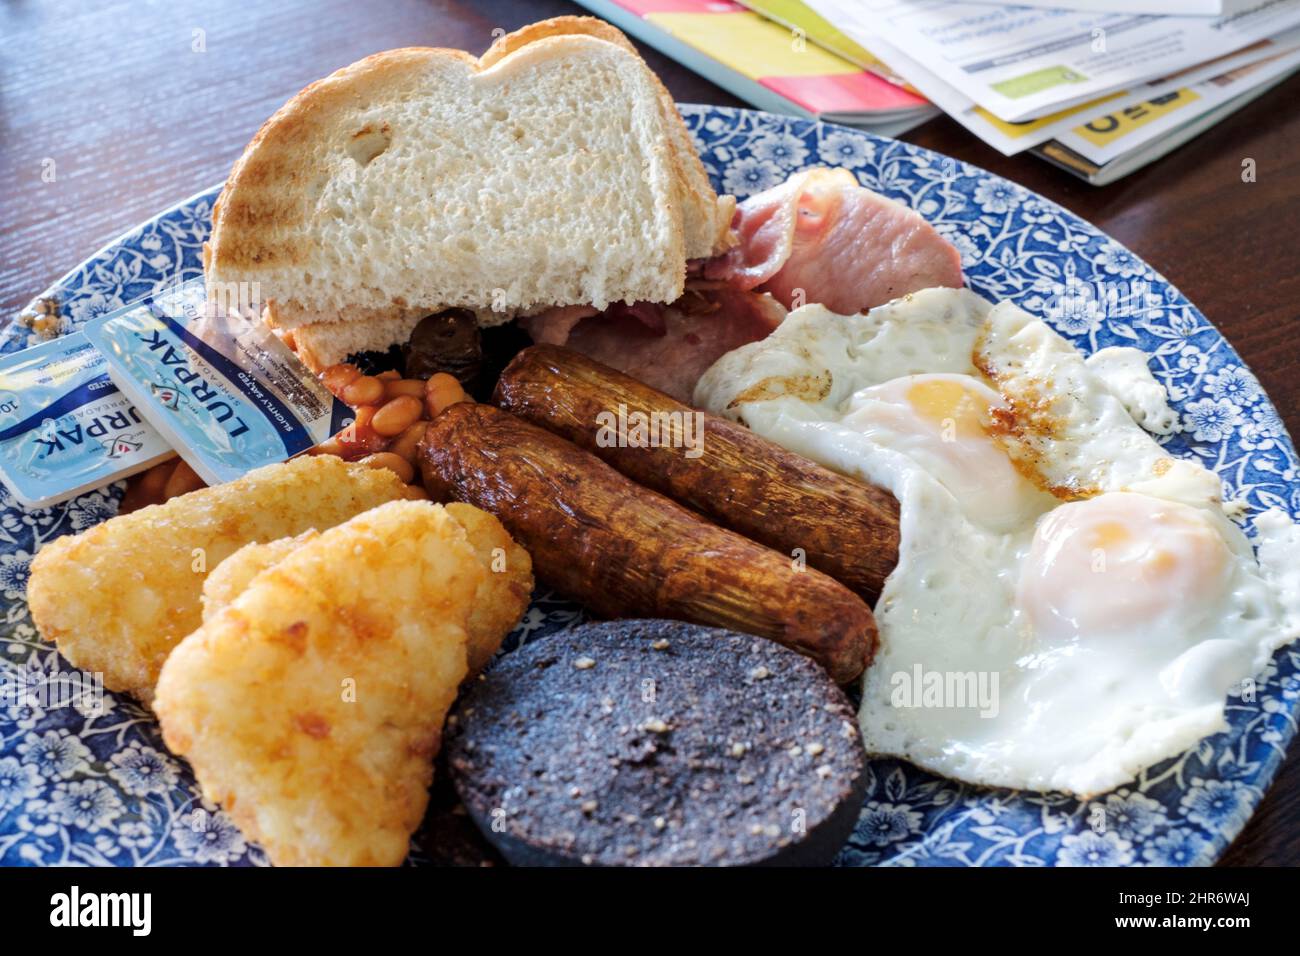 Ein großes Wetherspoons Frühstück wird in einem Wetherspoons Pub serviert. Das Frühstück ist 1406 Kalorien. Der zusätzliche Blutwurst fügt zusätzliche 352 Kalorien hinzu Stockfoto